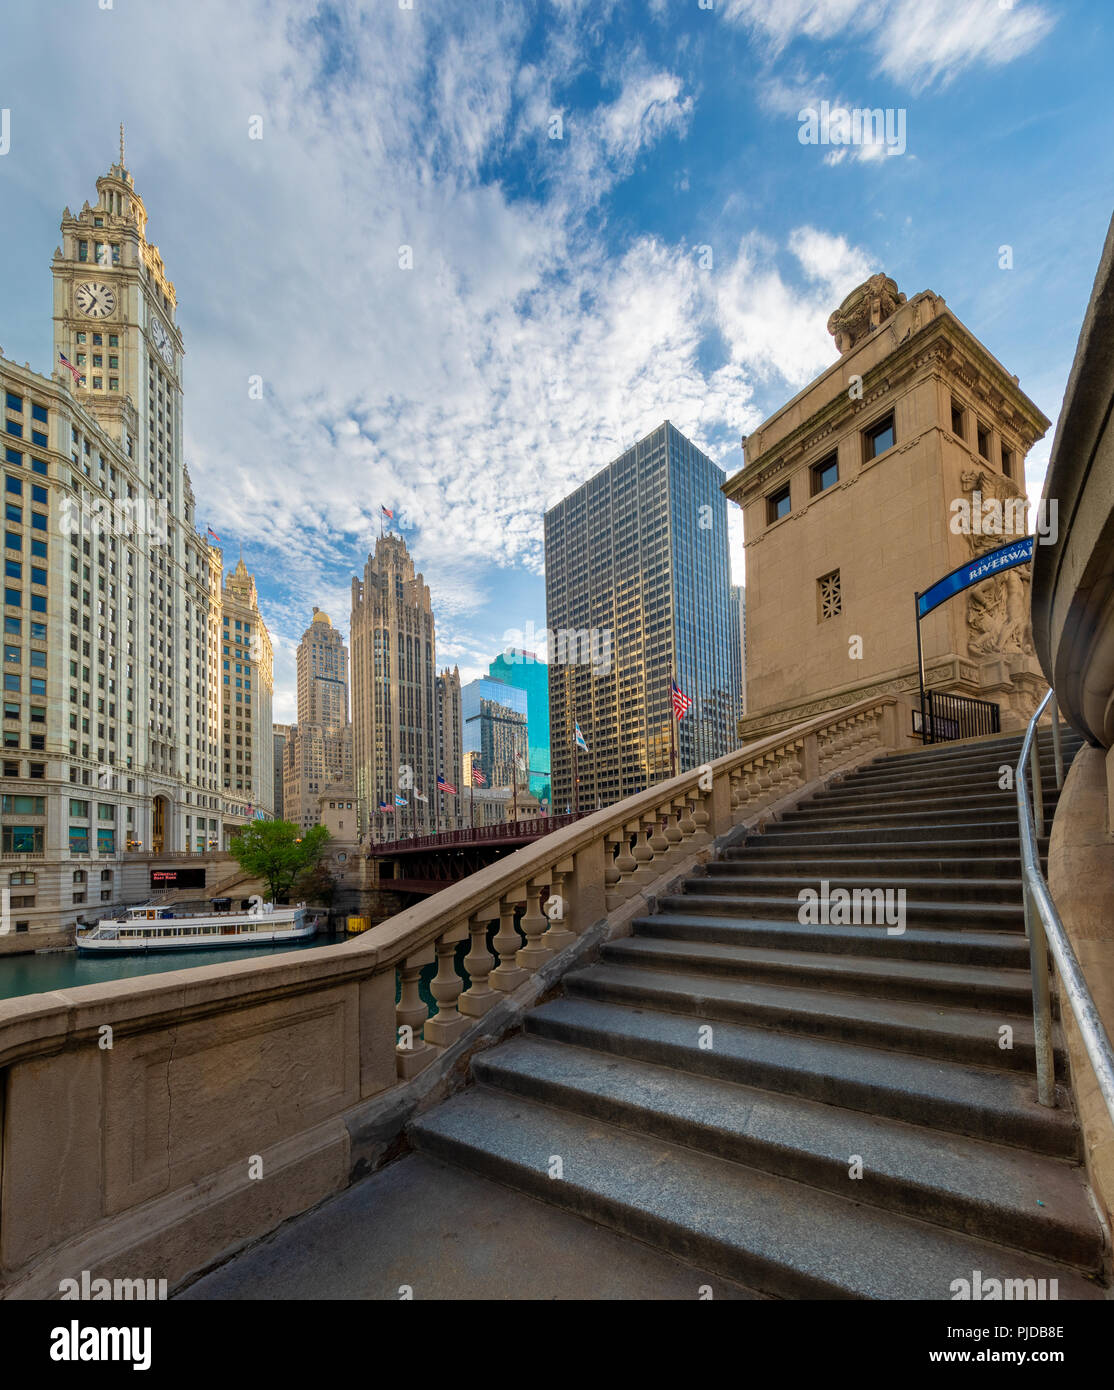 Chicago, una ciudad en el estado norteamericano de Illinois, es la tercera ciudad más poblada de los Estados Unidos. Foto de stock